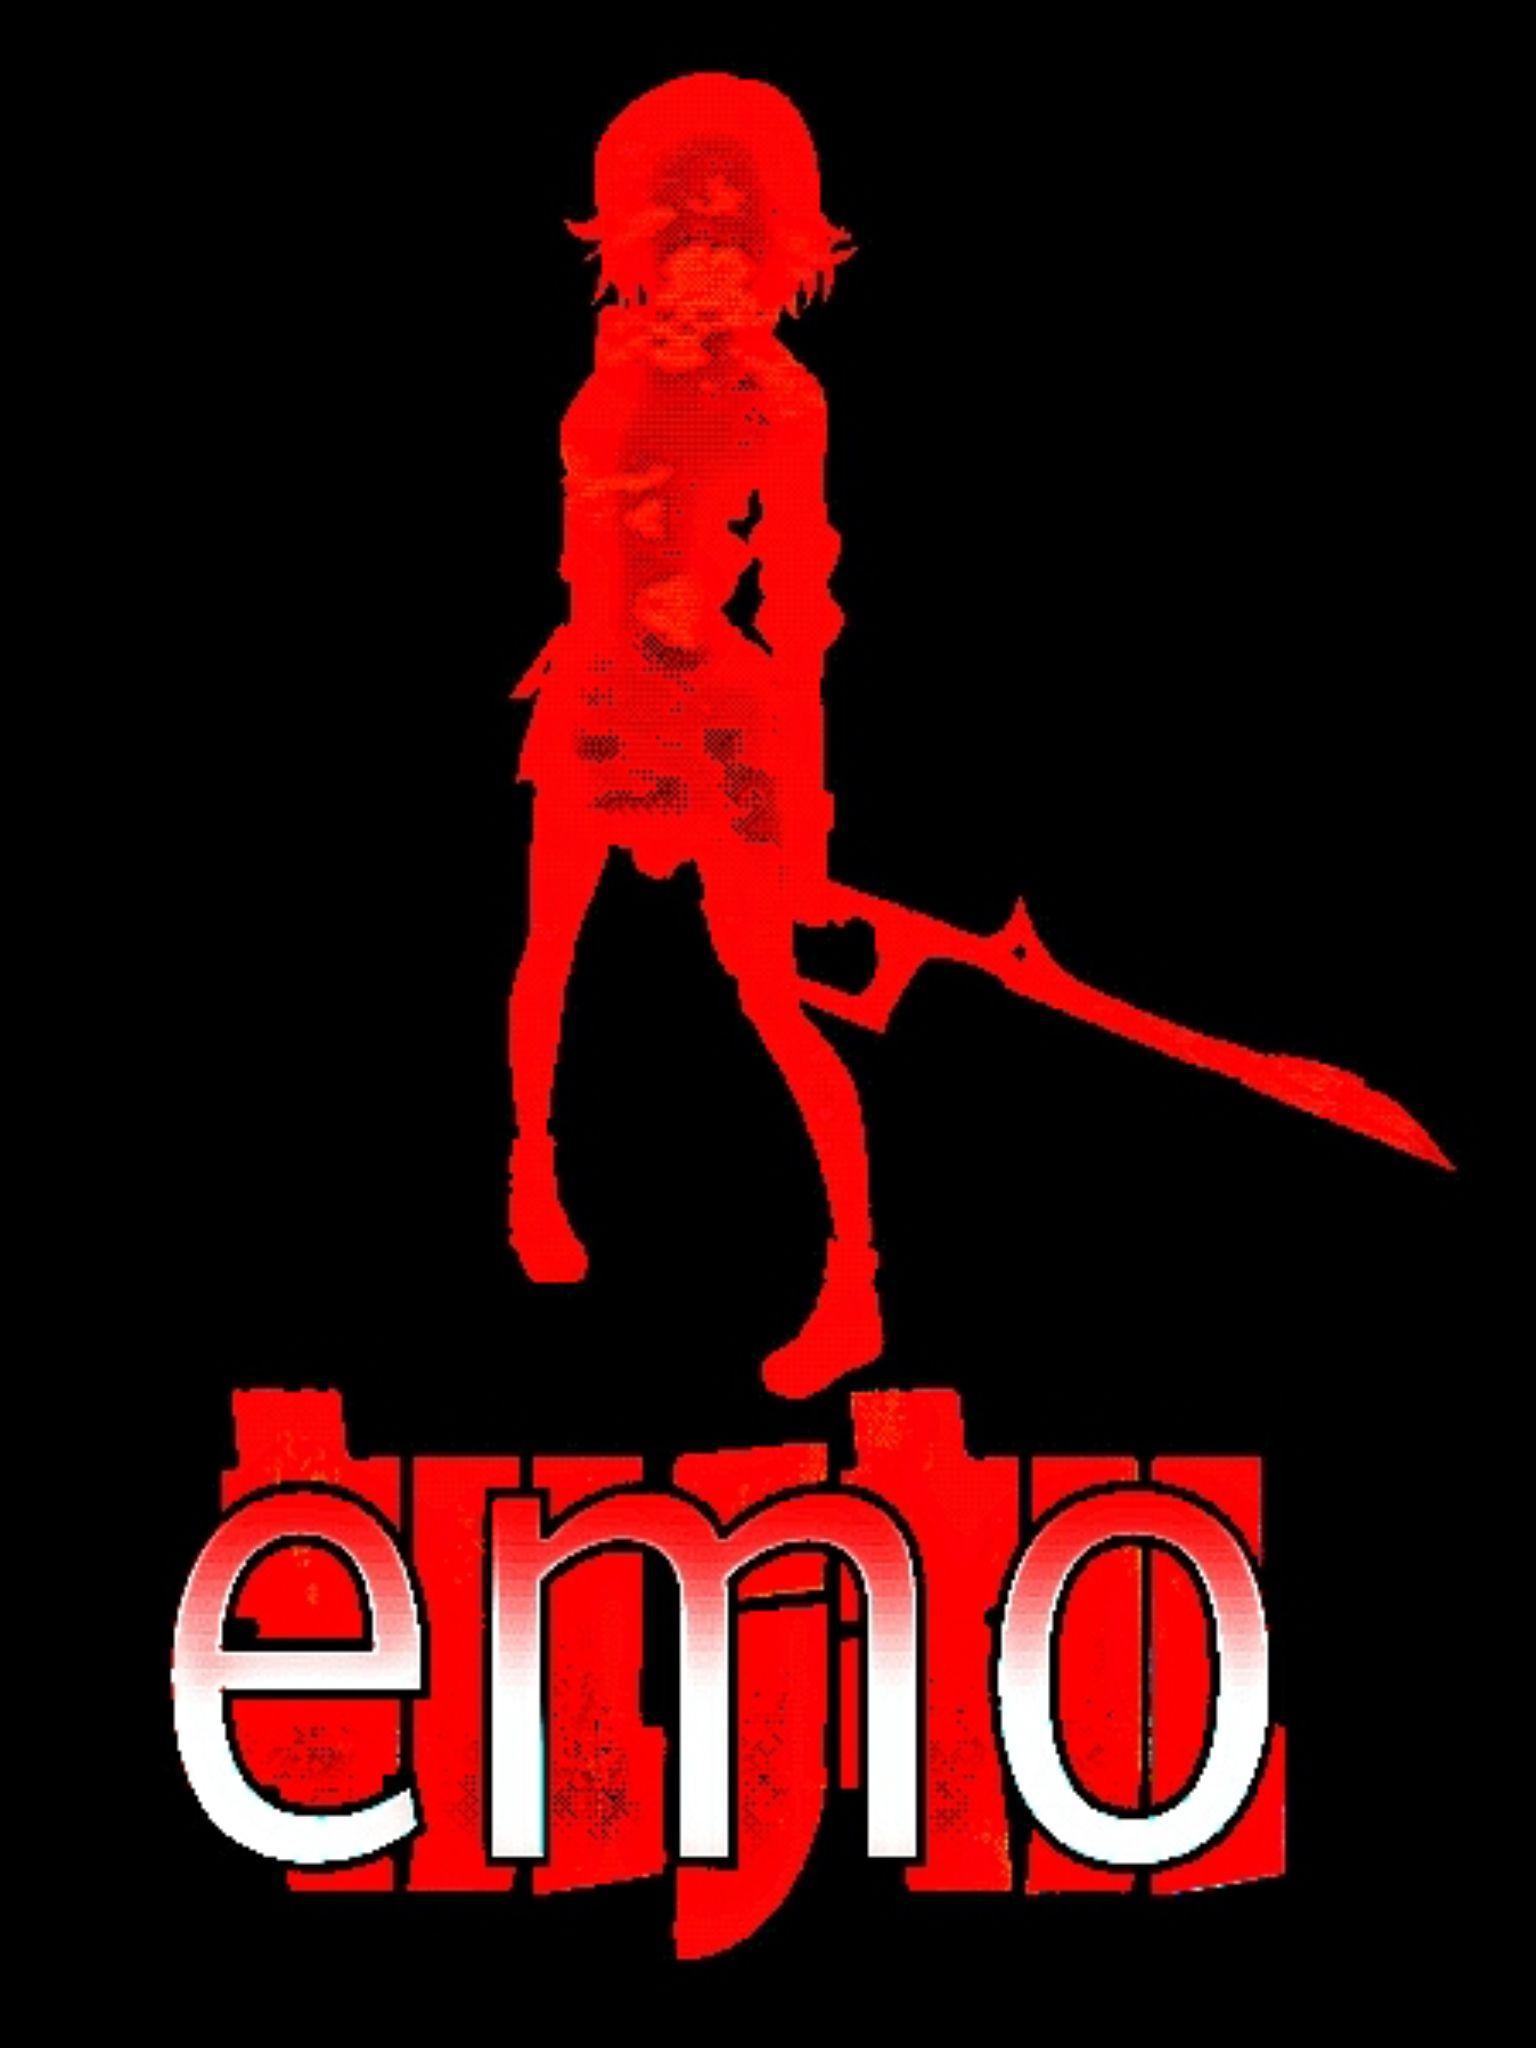 Emo Logo - Emo logo | King Emo logos | Pinterest | Emo, Logos and King